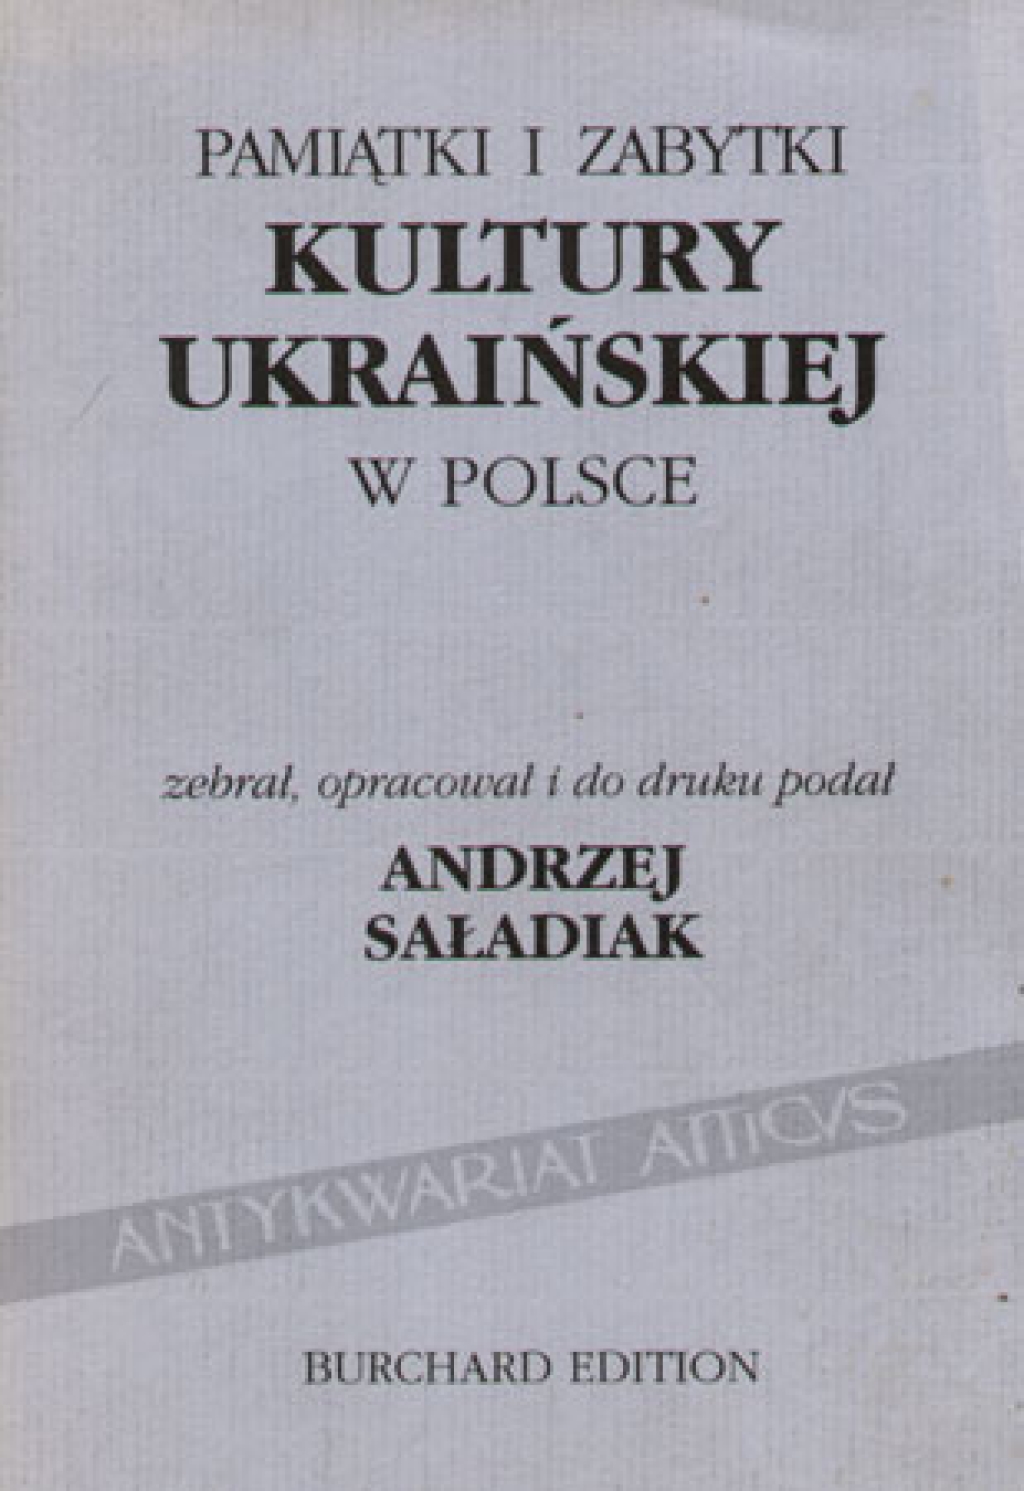 Pamiątki i zabytki kultury ukraińskiej w Polsce [katalog]`